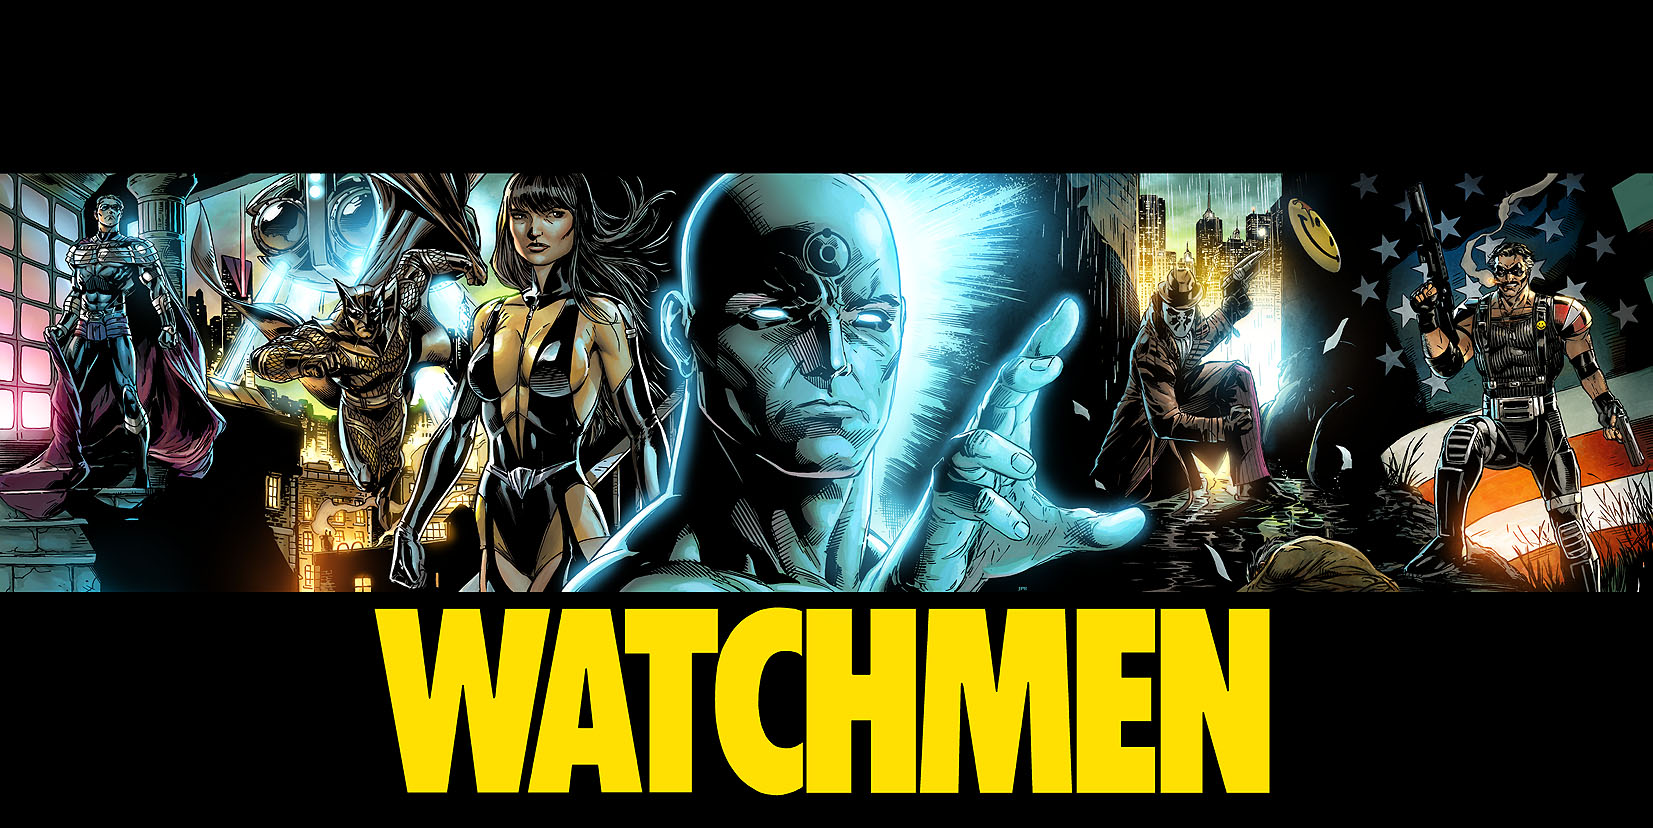 High Resolution Wallpaper | Watchmen 1653x828 px